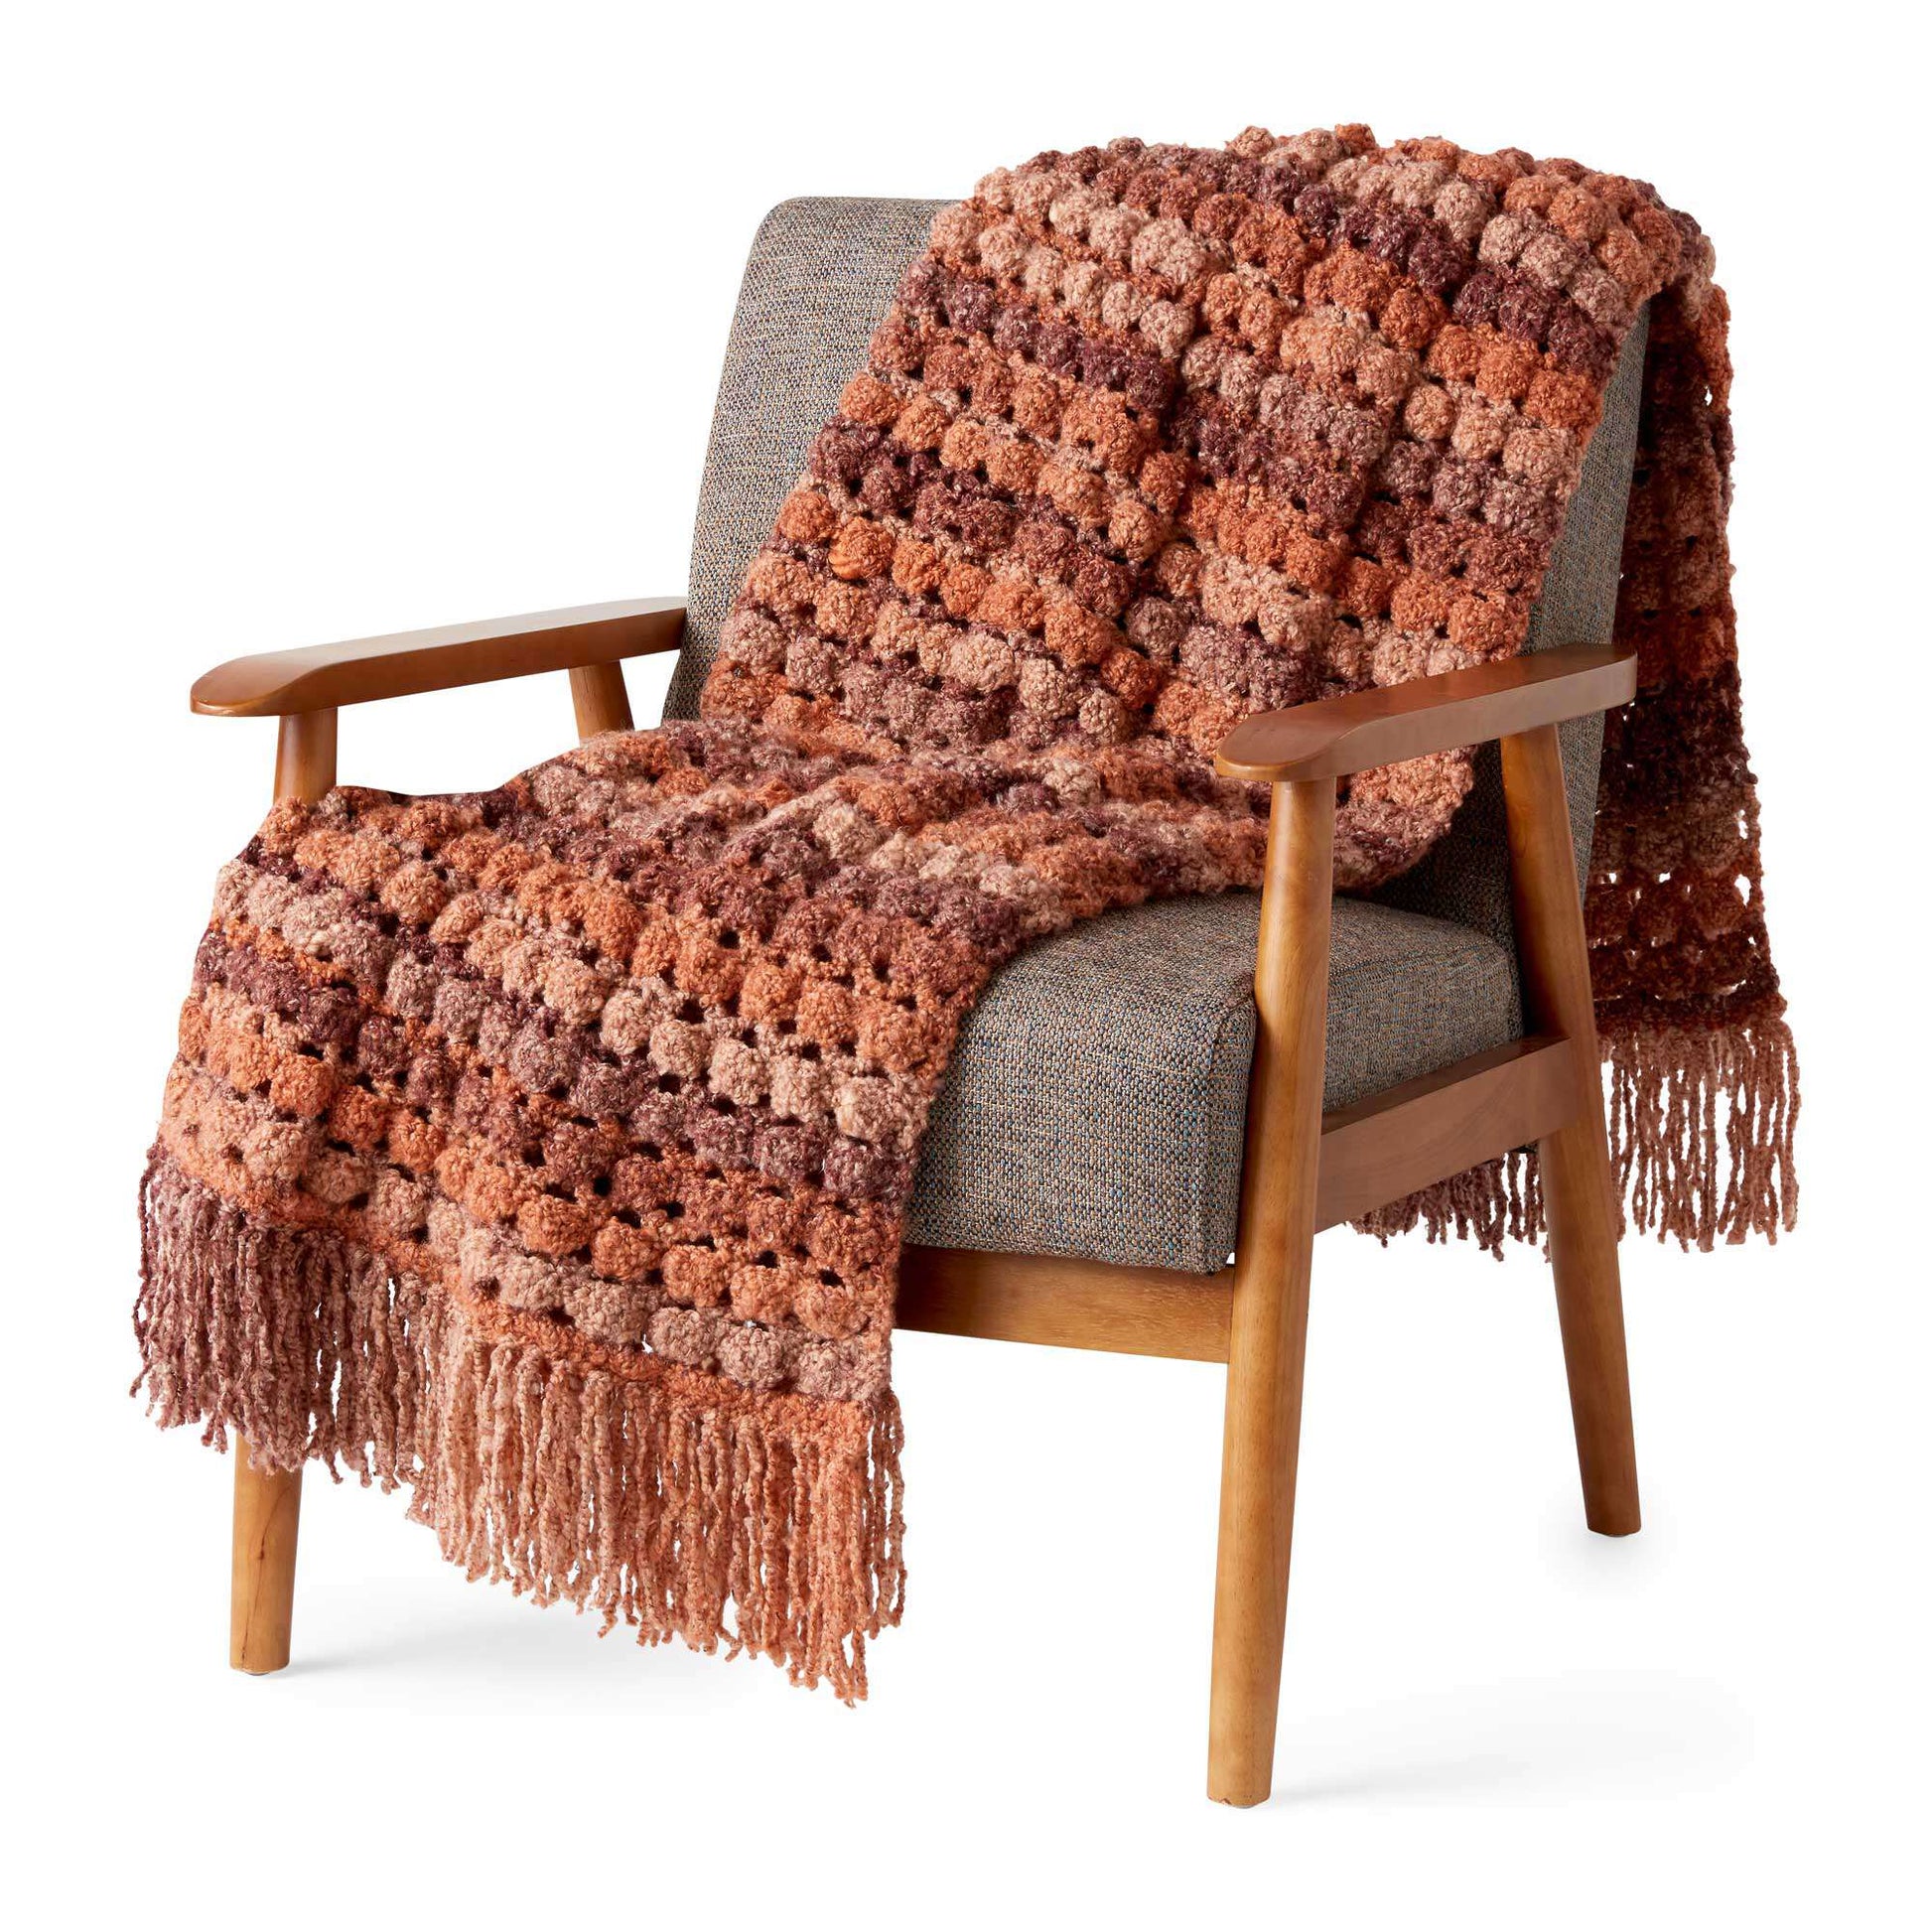 Free Bernat Spaces In Between Crochet Blanket Pattern